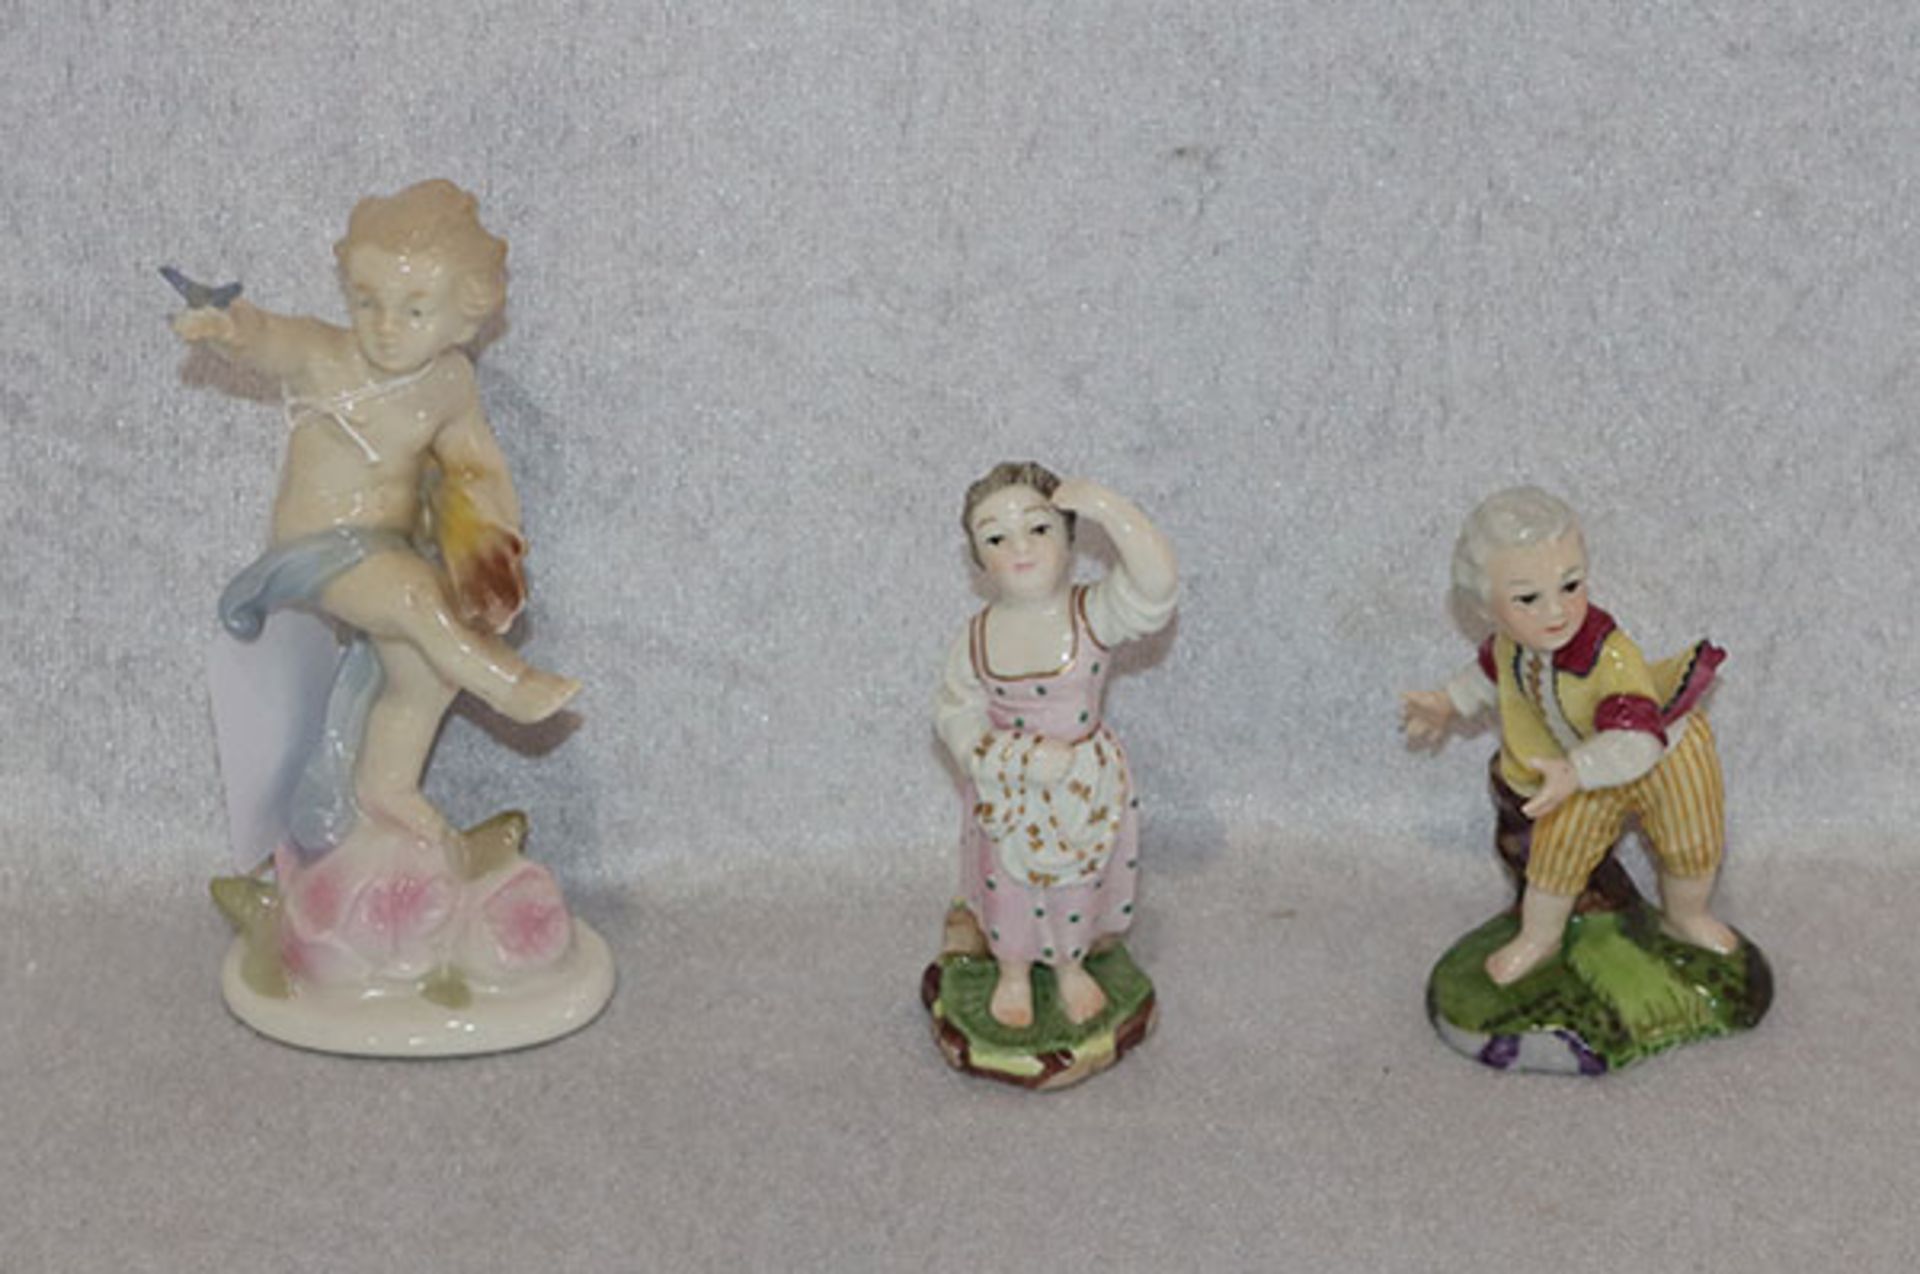 2 Hoechst Porzellanfiguren, Mädchen und Junge, Junge ist der Kopf abgebrochen, H 9,5 cm, und